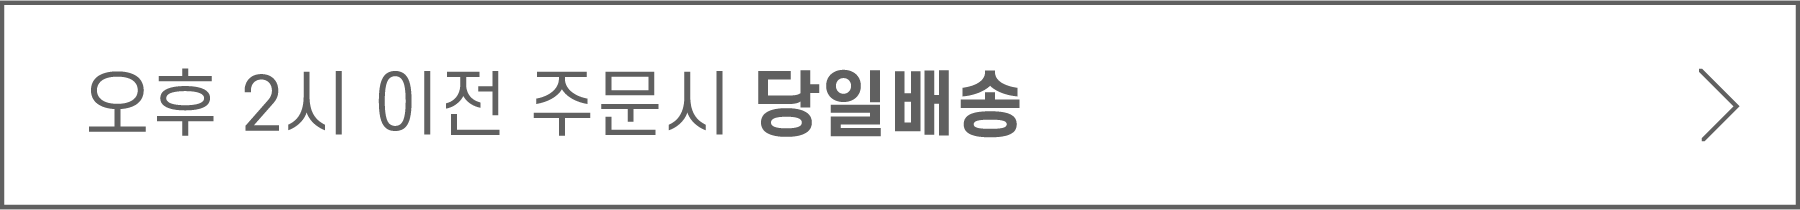 상세4단배너-당일배송